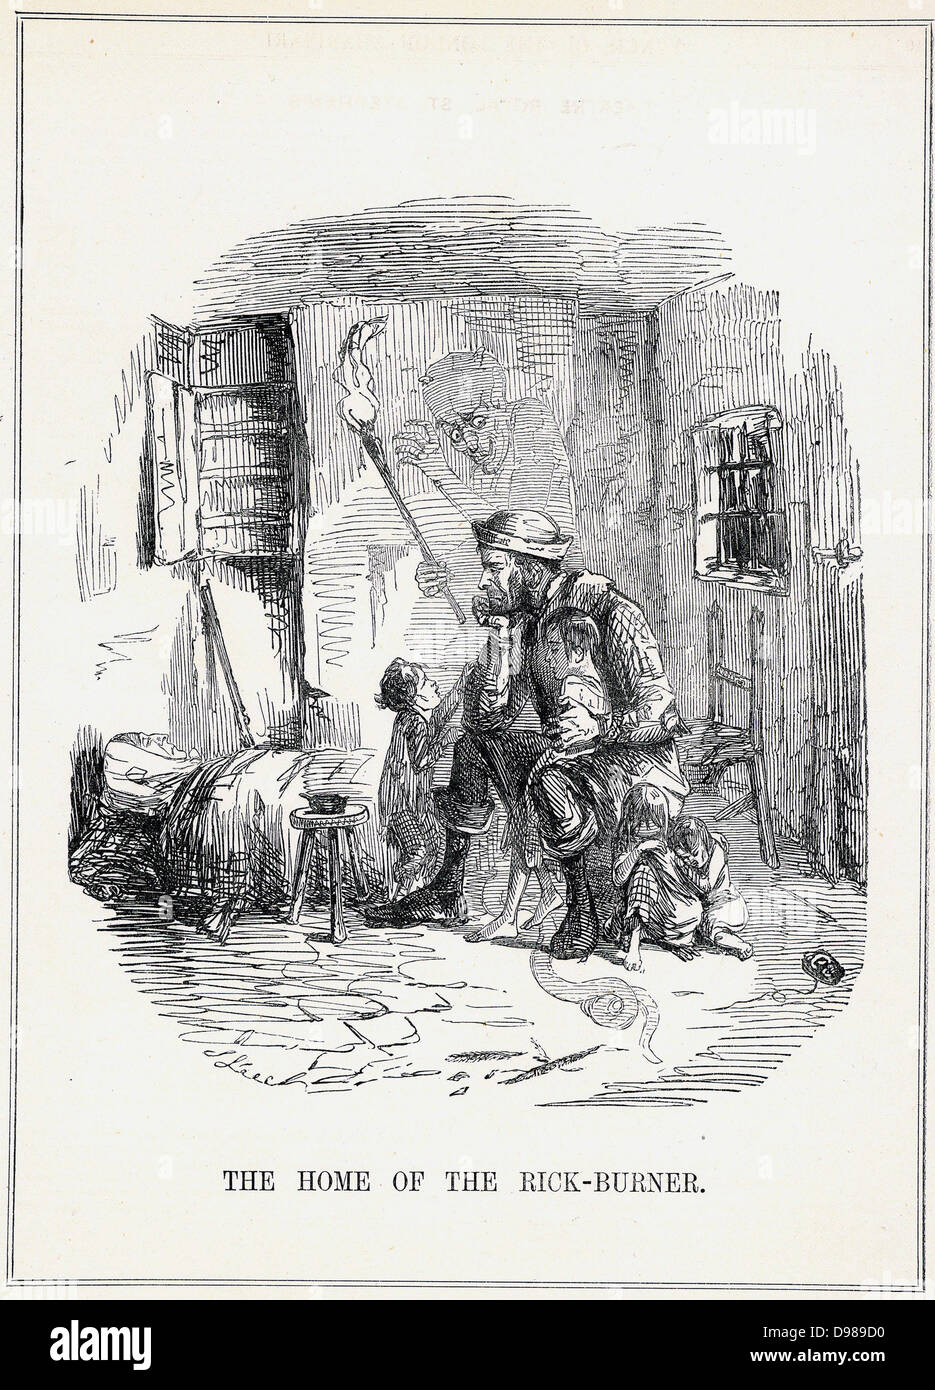 L'accueil de l'Rick-Burner' : Caricature de John Leech de 'Punch', Londres, février 1844, montrant les pauvres conditions de vie de l'ouvrier agricole. Les bas salaires et la crainte du chômage en raison de l'introduction des machines agricoles contraint les hommes à se tourner vers la machine de gravure et rick se briser. Banque D'Images